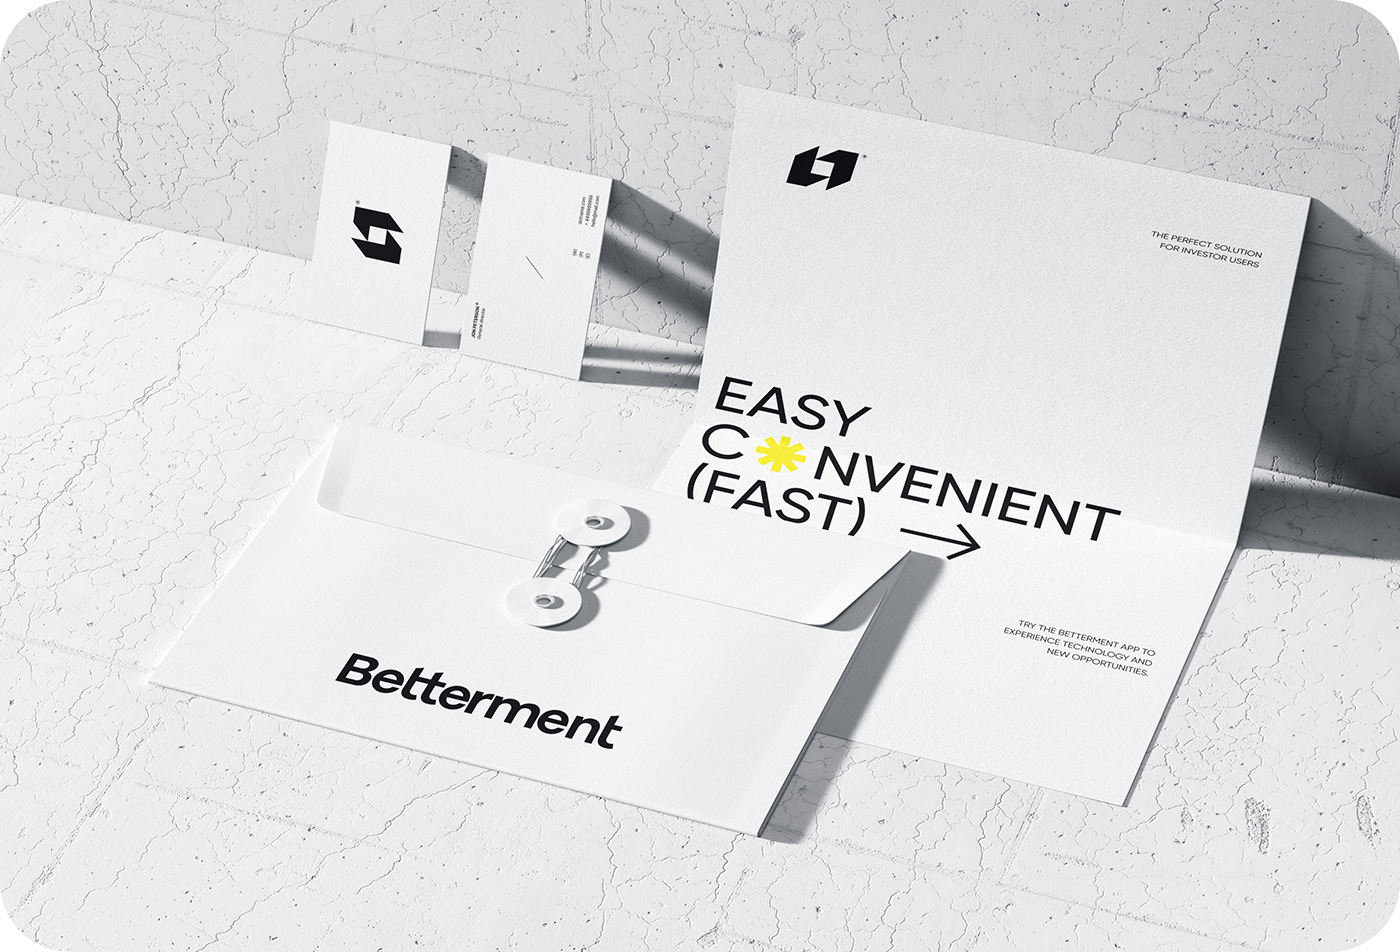 Betterment - Branding & UX UI Design